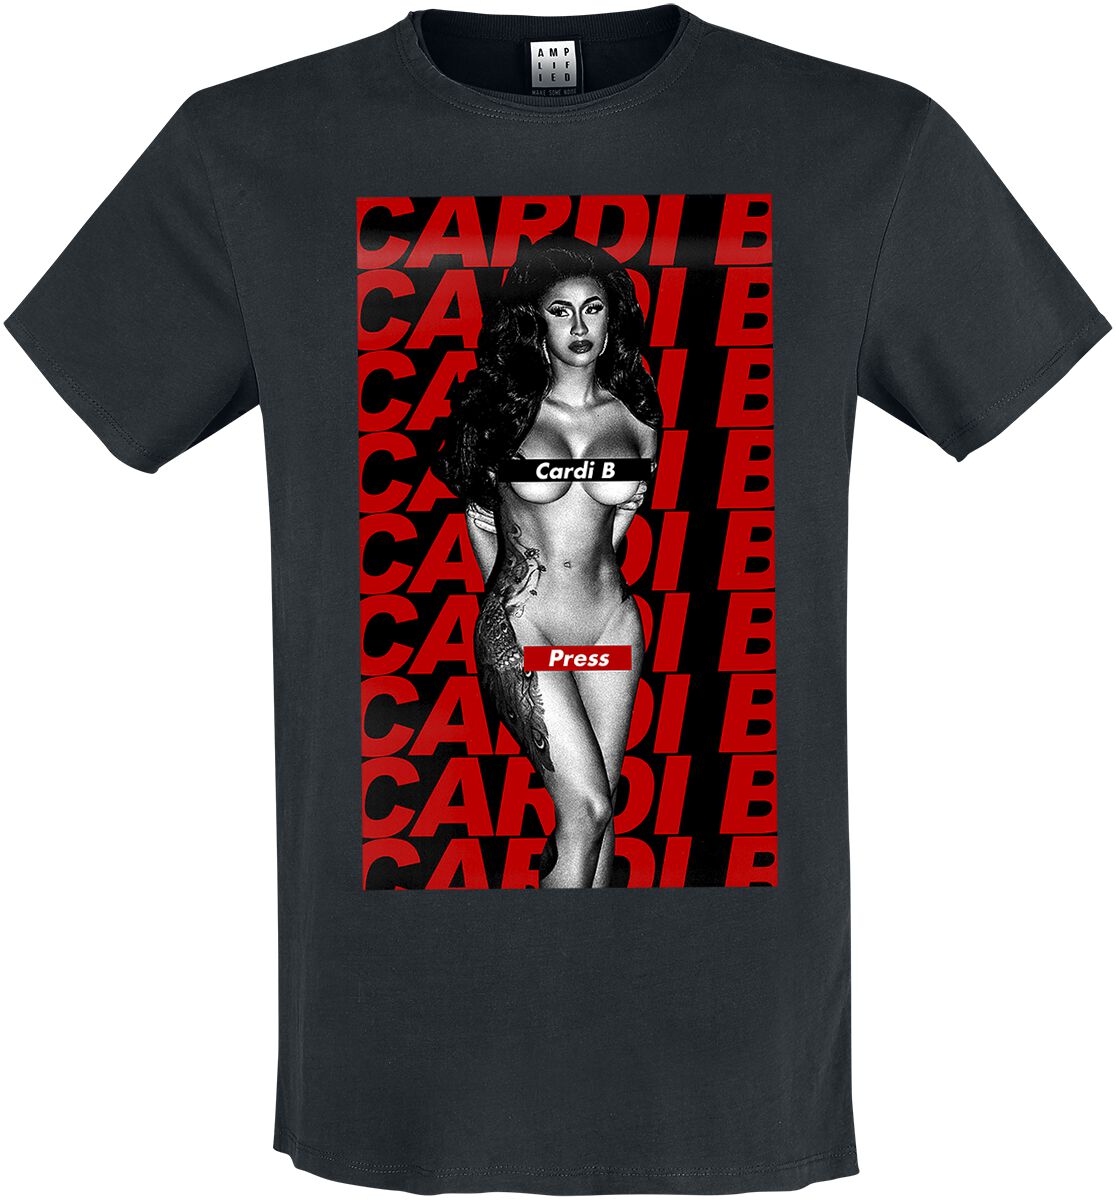 Cardi B T-Shirt - Amplified Collection - Press - S bis XXL - für Männer - Größe L - schwarz  - Lizenziertes Merchandise!